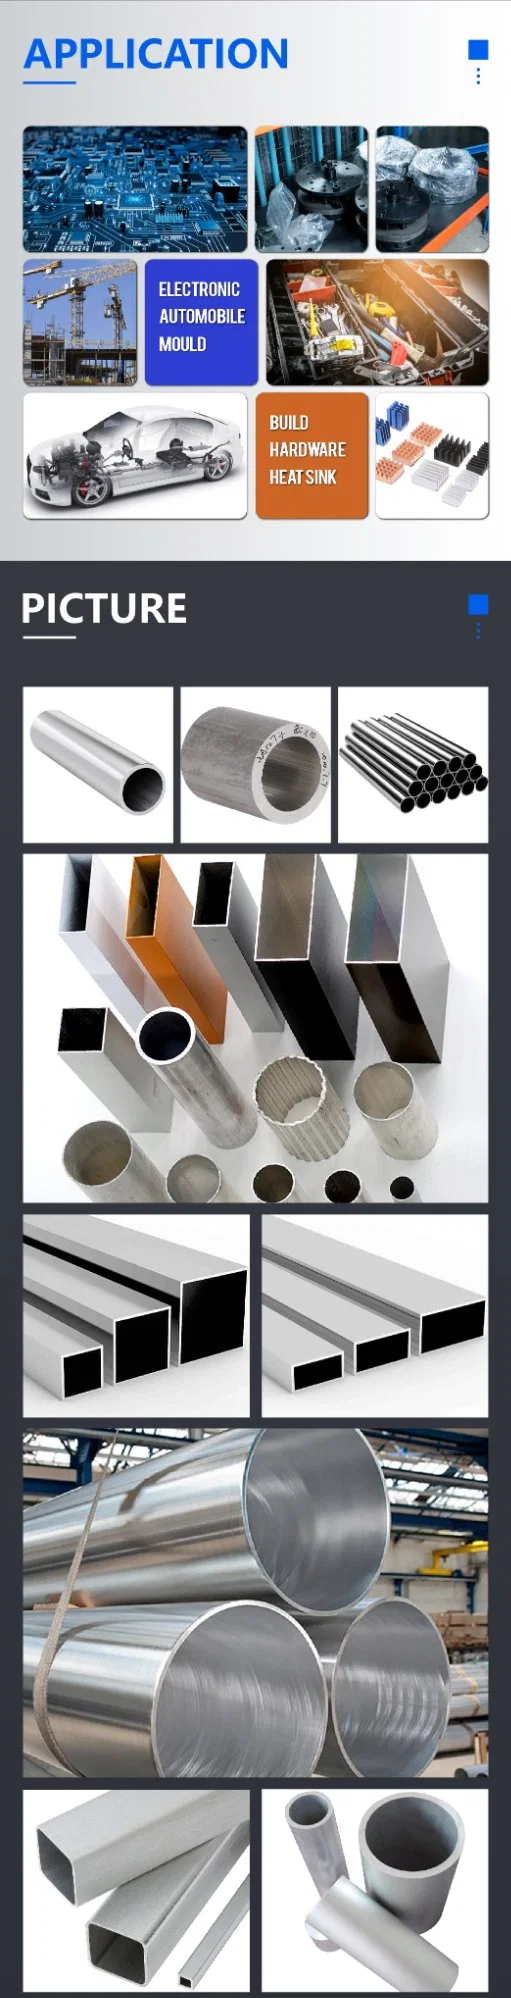 Aluminium Alloy Pipe Made in China, High Temperature Resistance Aluminium Tube 6061 6082 6063